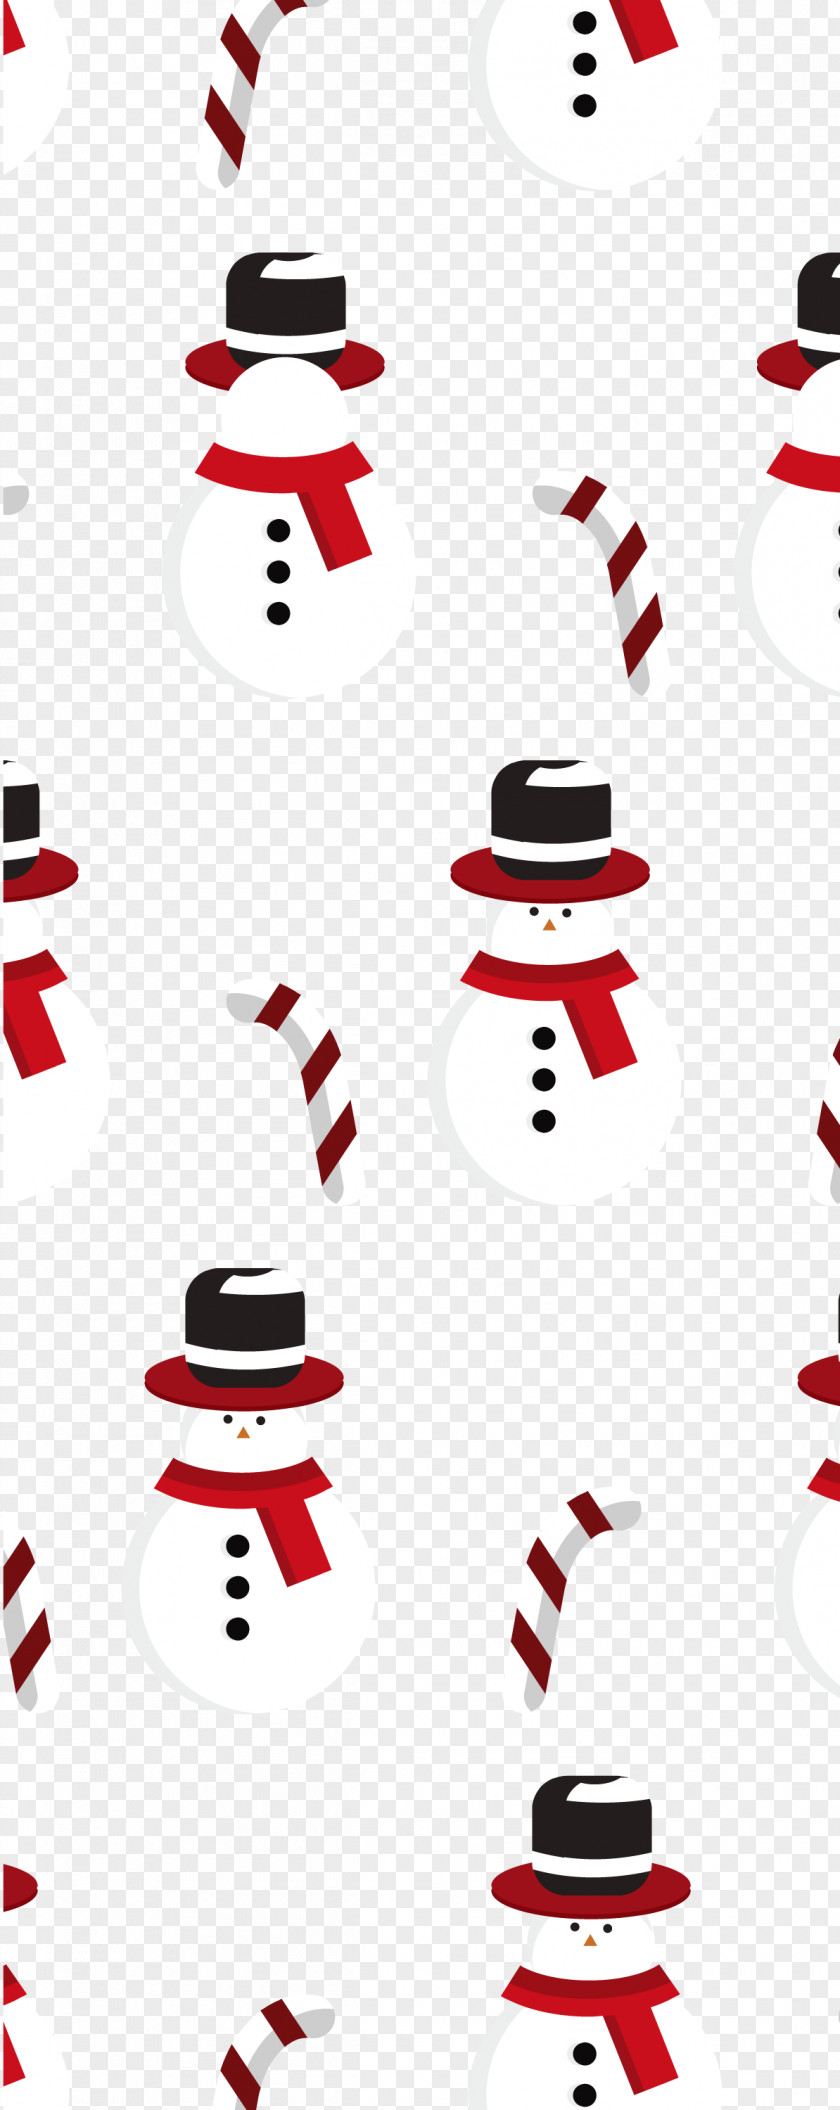 Snowman Wallpaper Design Draft Clip Art PNG